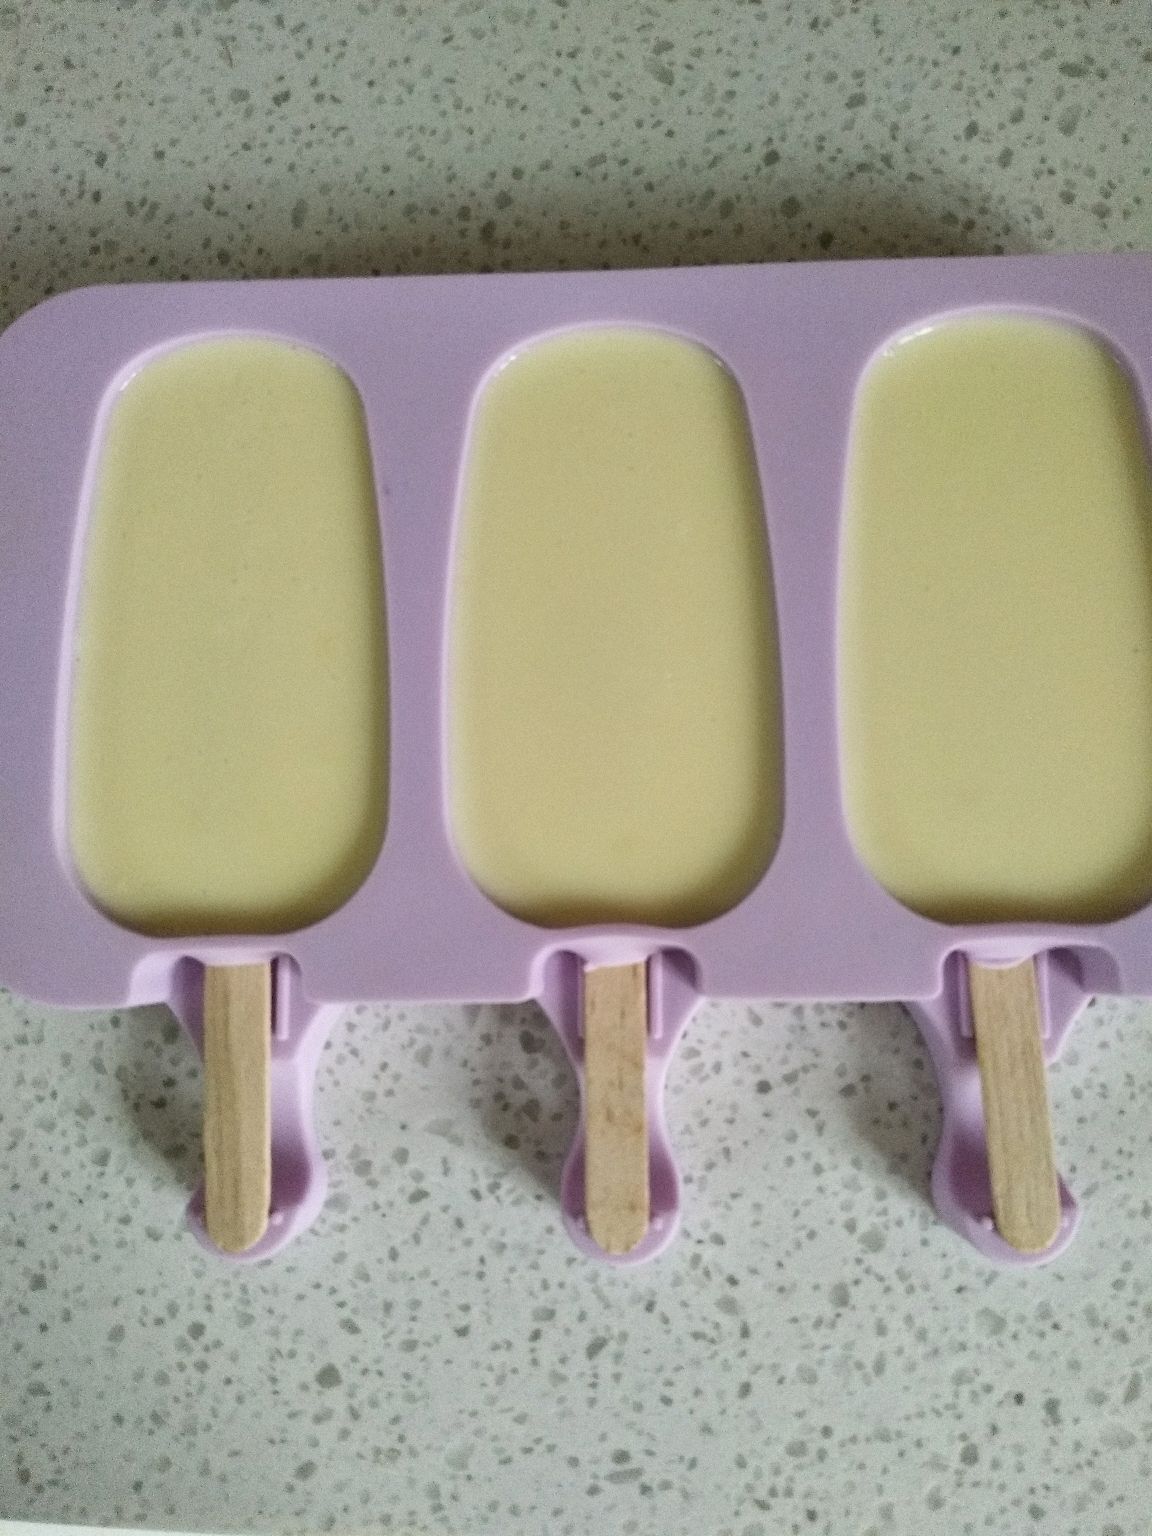 水果拼盘冰淇淋怎么做_水果拼盘冰淇淋的做法_微微0214_豆果美食